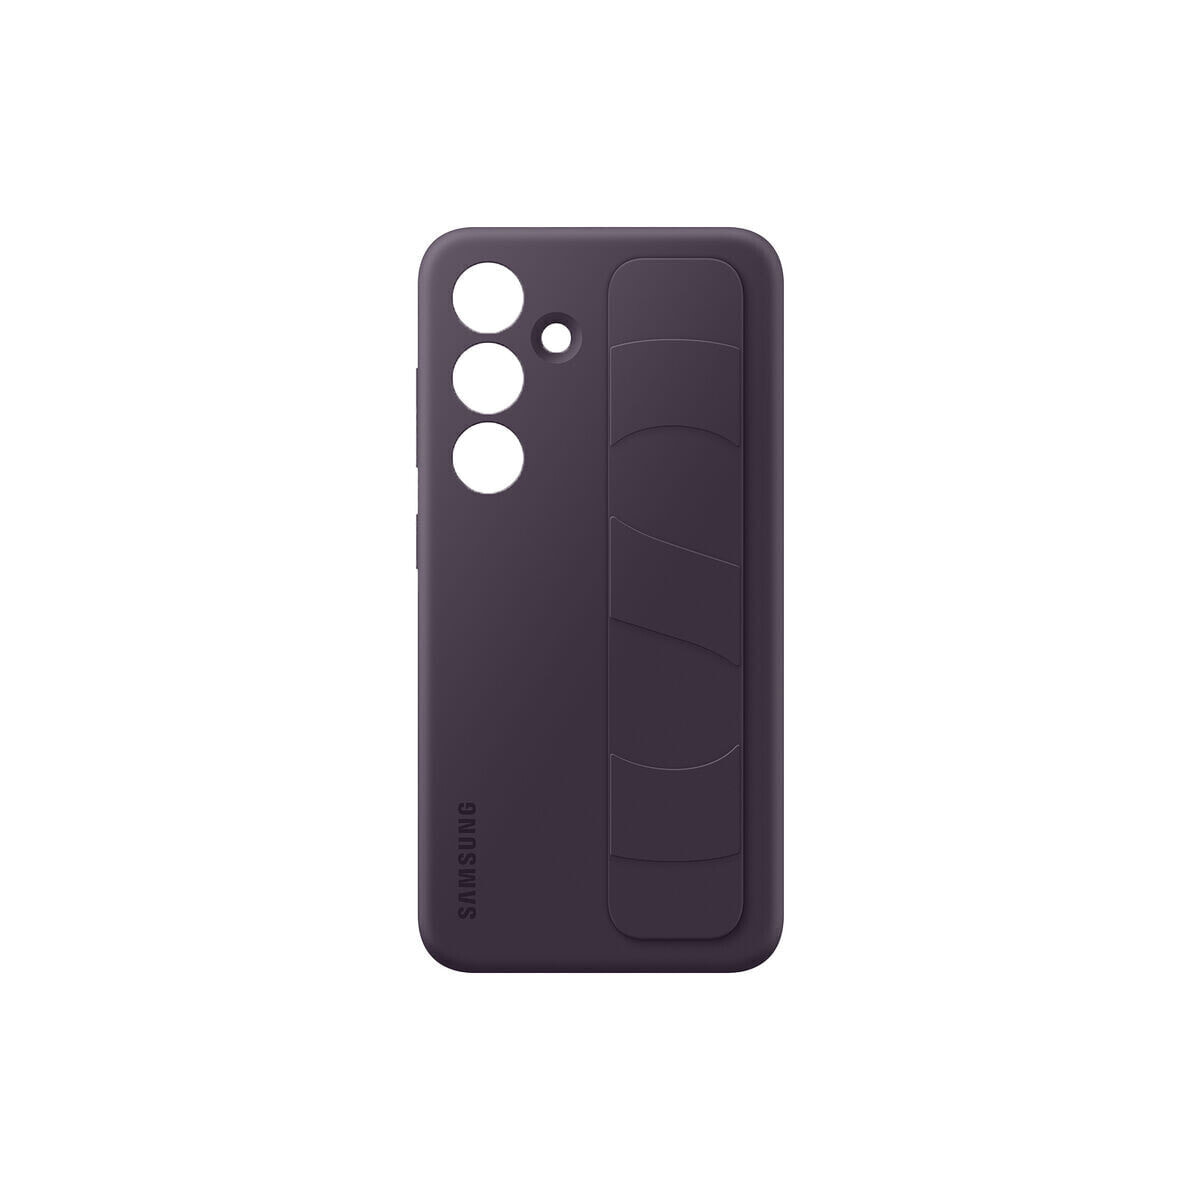 Samsung Standing Grip Case Violet чехол для мобильного телефона 15,8 cm (6.2